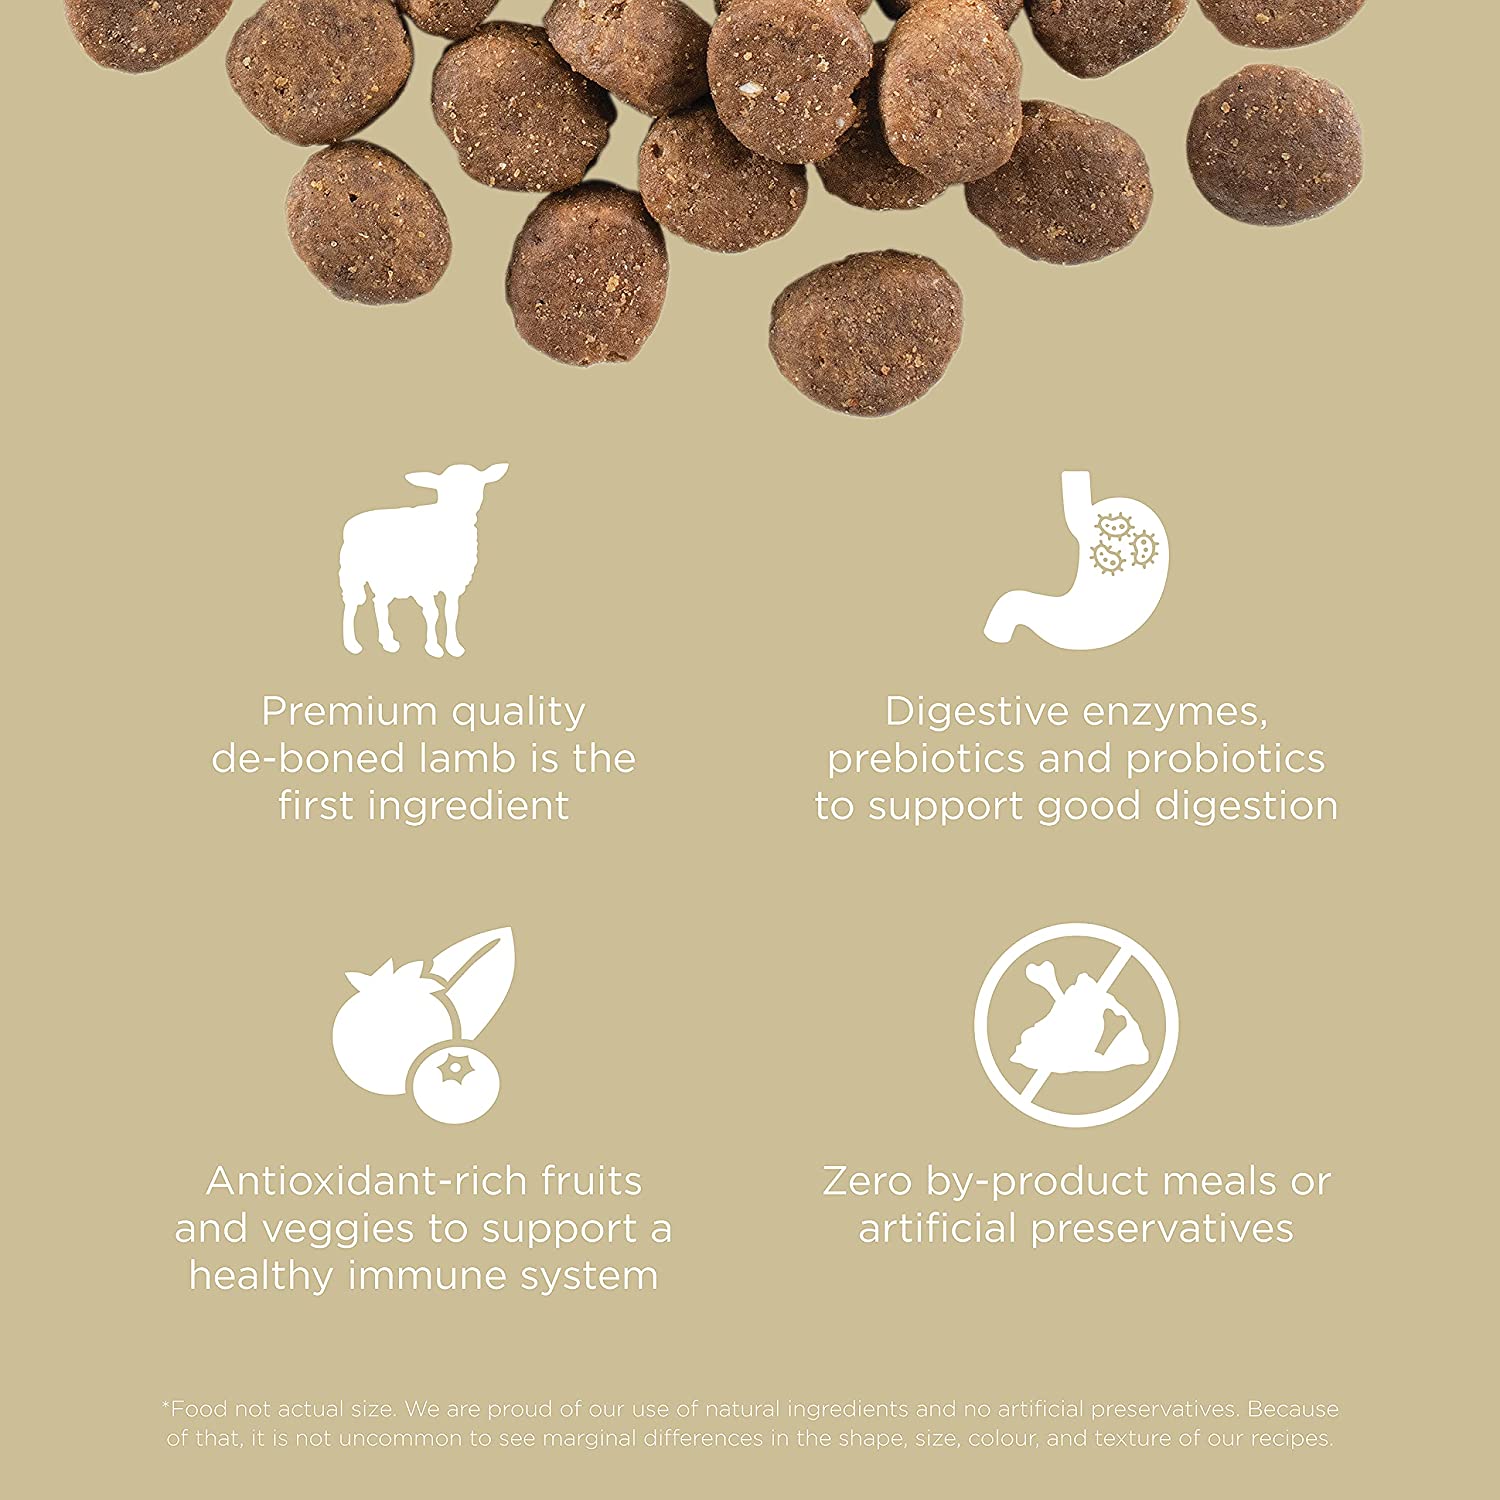 GO! CARNIVORE Grain Free Lamb + Wild Boar Recipe for dogs  Dog Food  | PetMax Canada